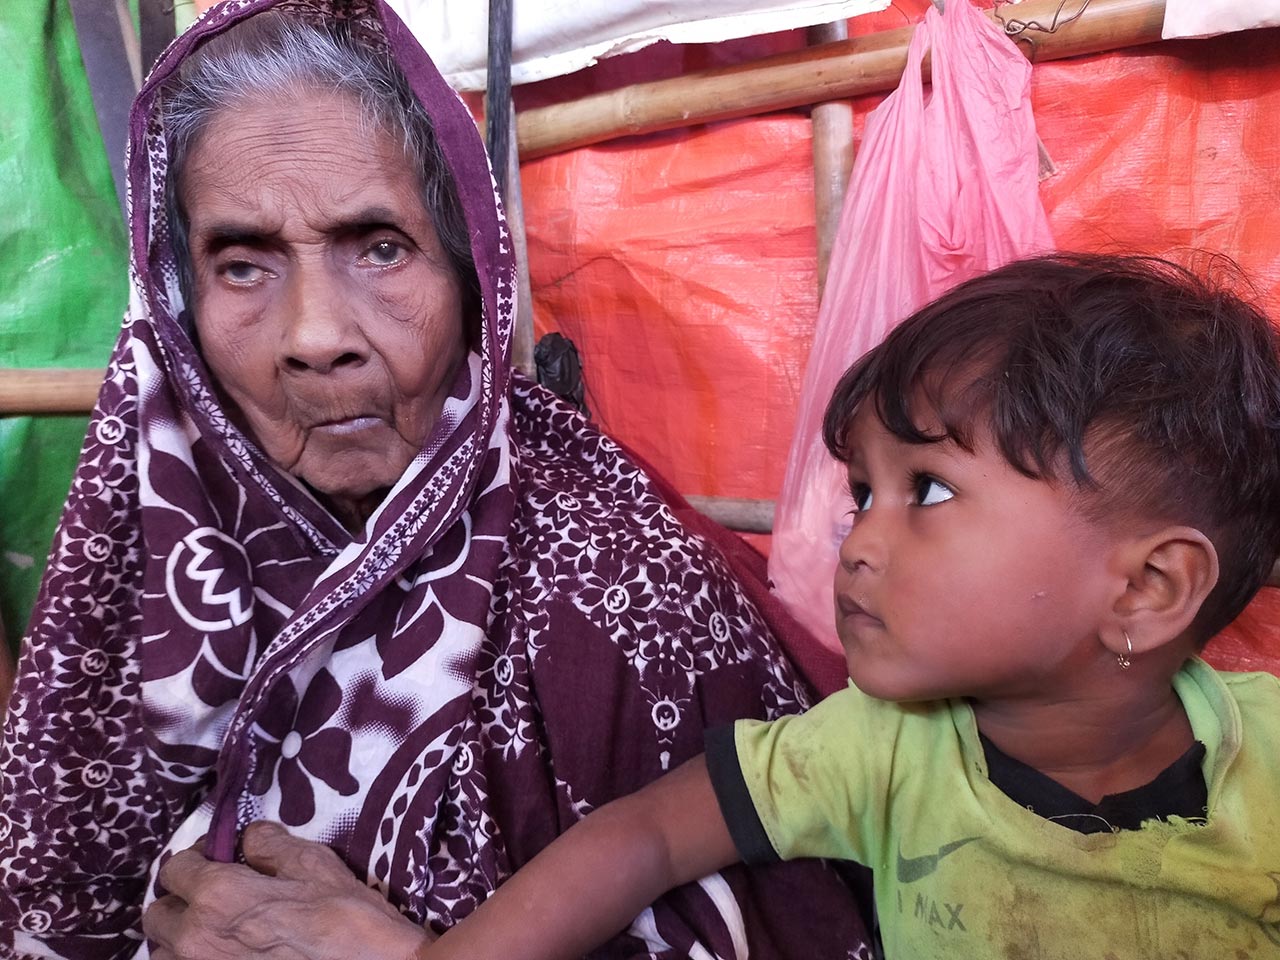 سليما خاتون ، لاجئة تبلغ من العمر 120 عامًا برفقة طفل صغير